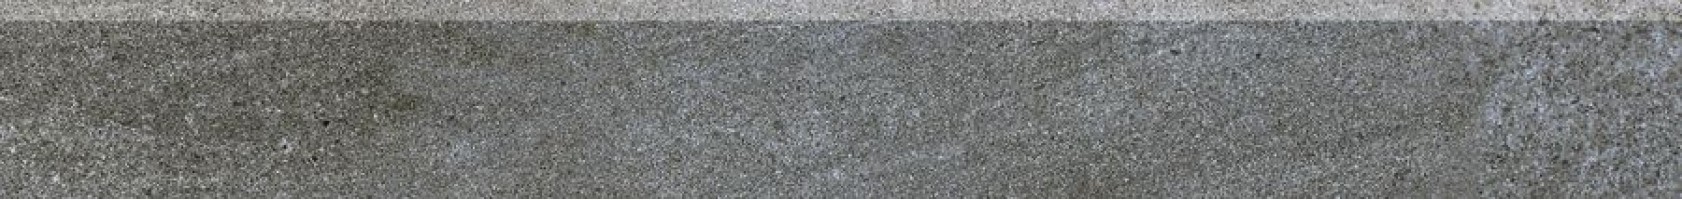 Плинтус Rako Quarzit темно-серый 9.5x80 DSA89738